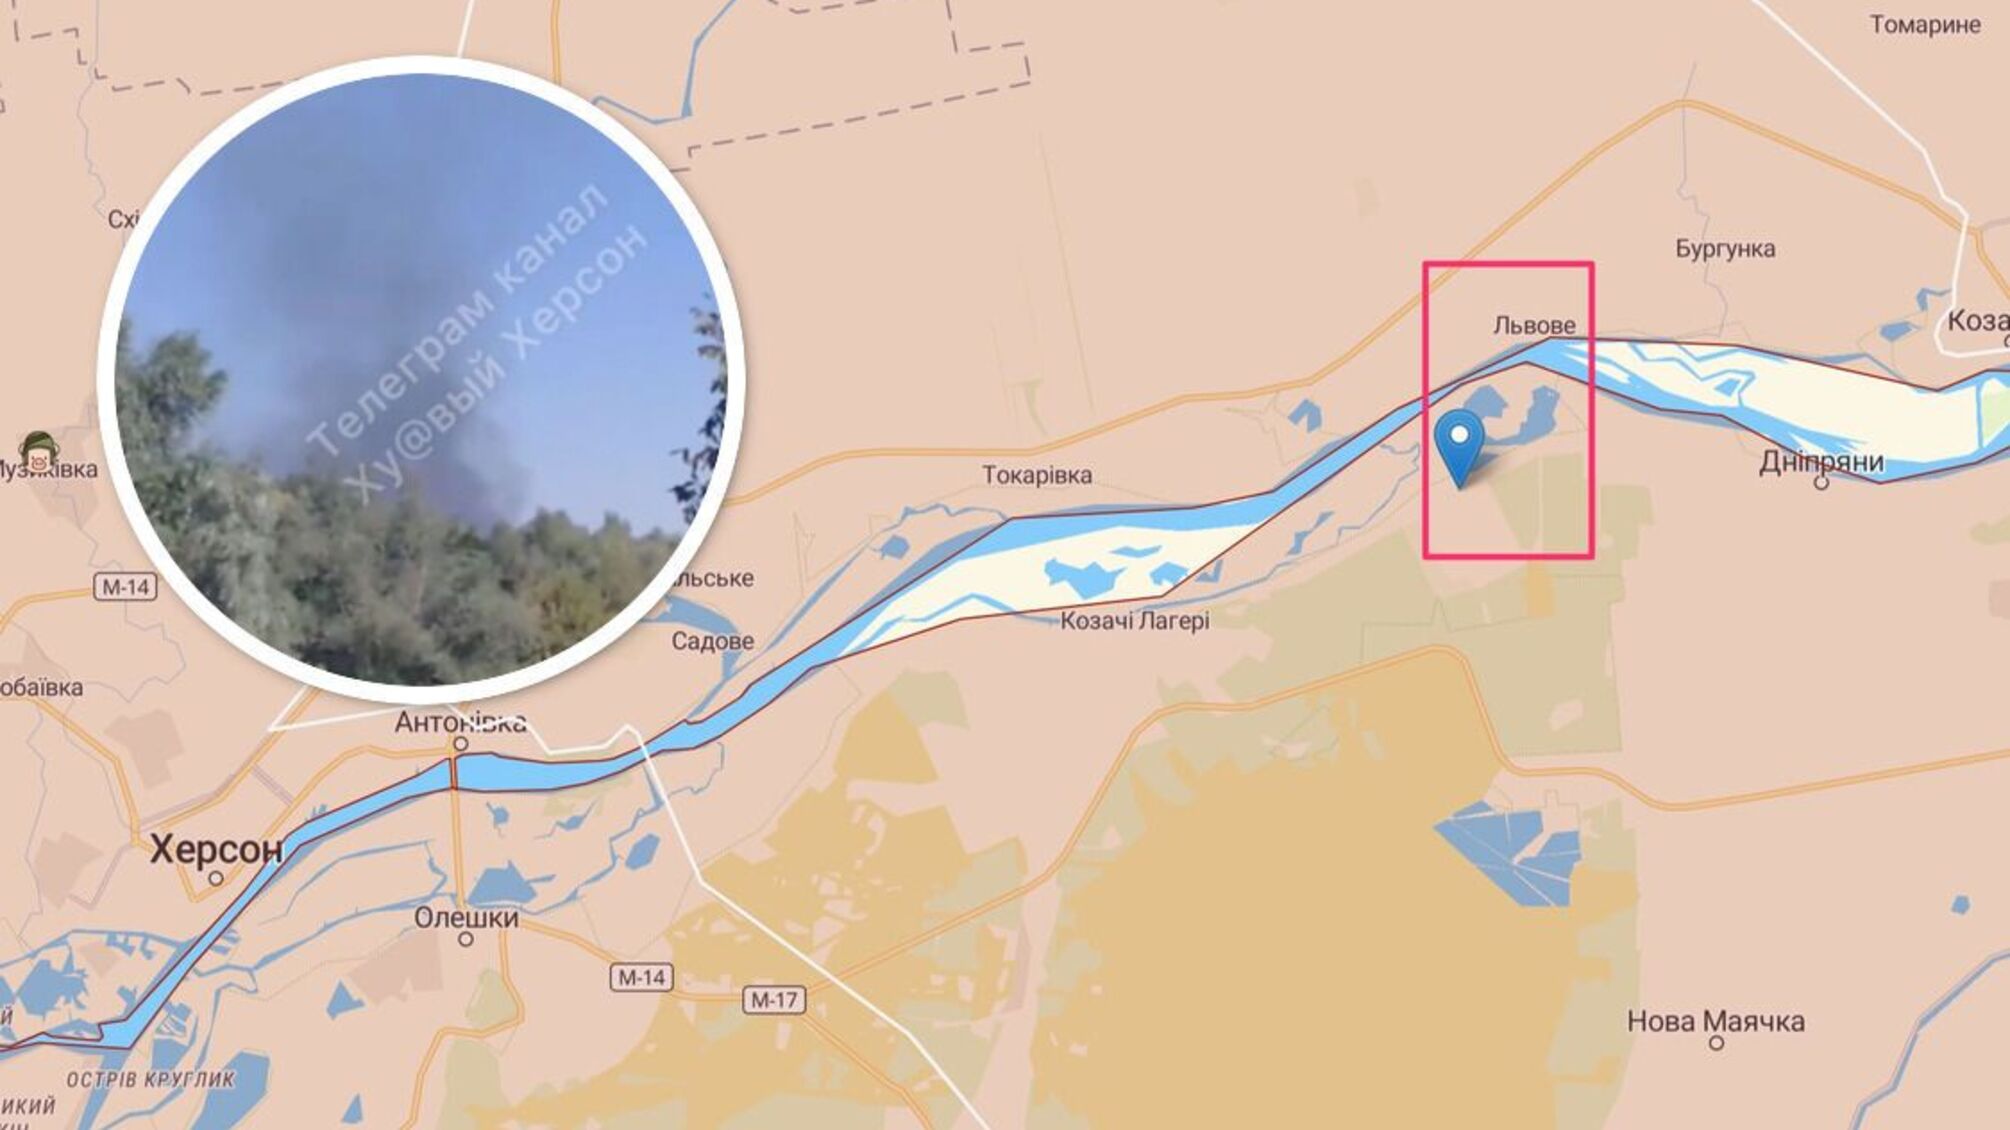 Сообщают о взрывах в Крынках Херсонской области